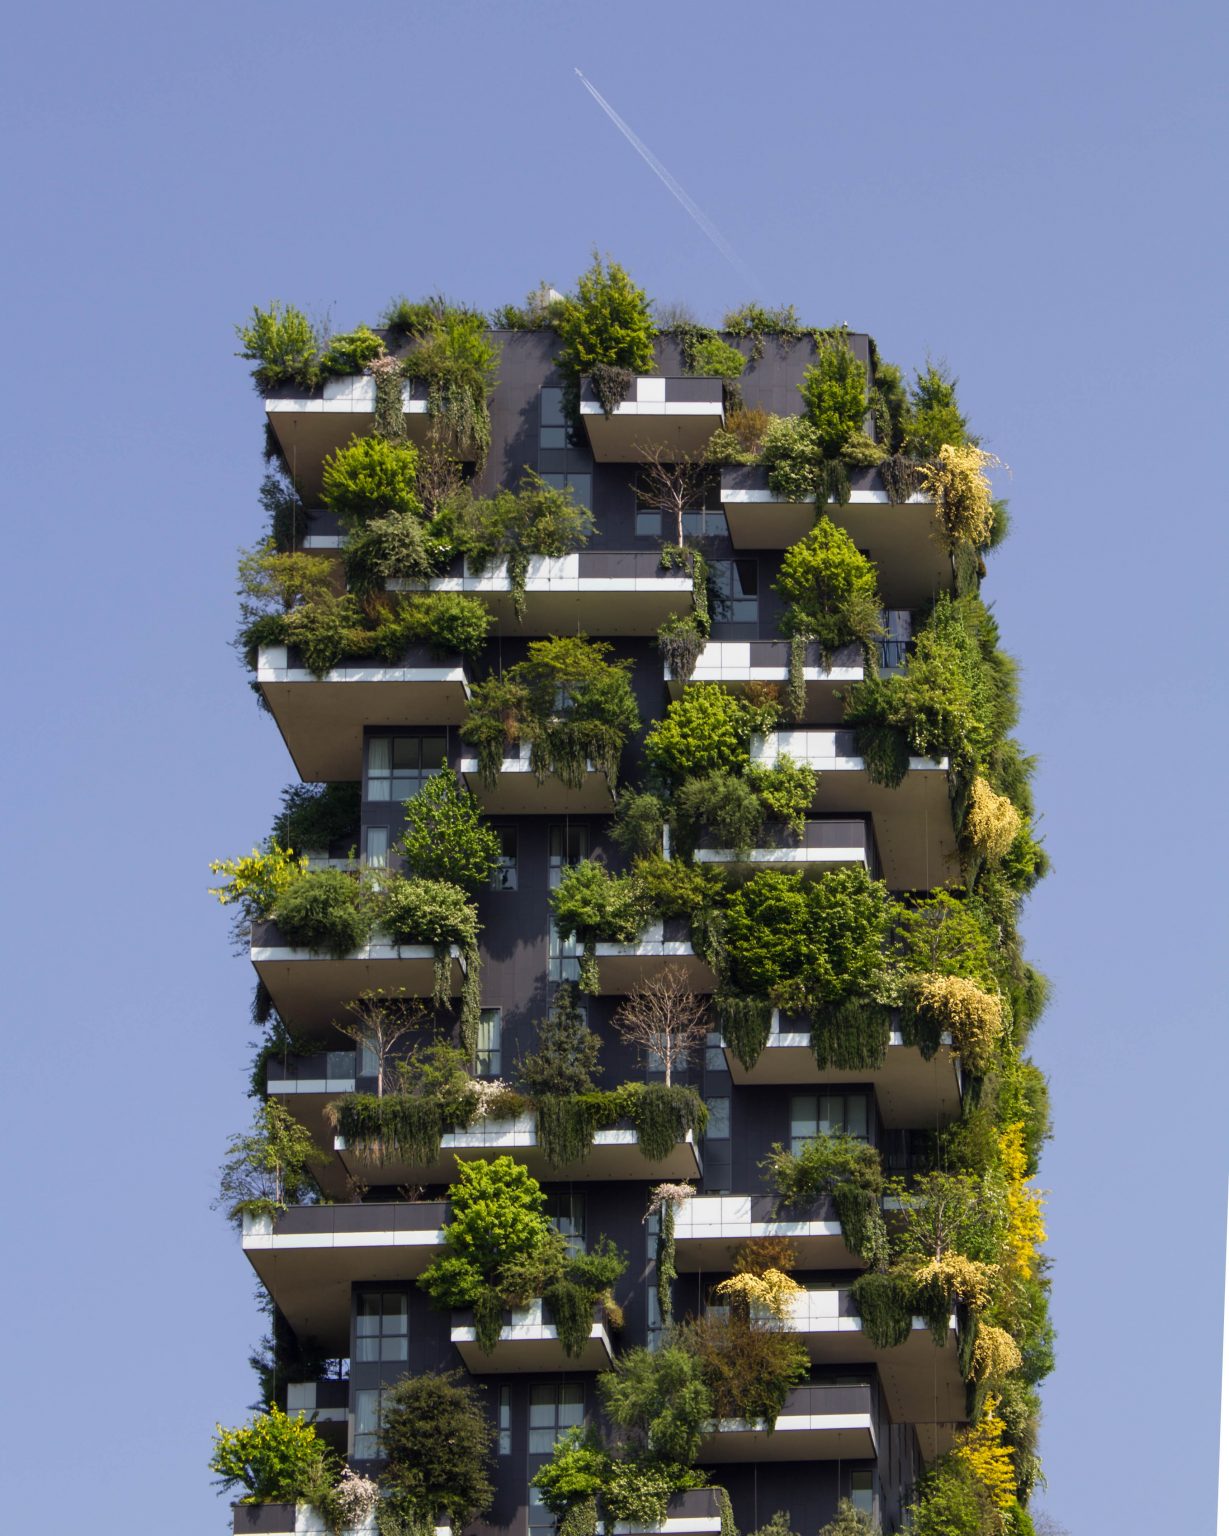 Arquitectura sustentable y sostenible para el medioambiente.